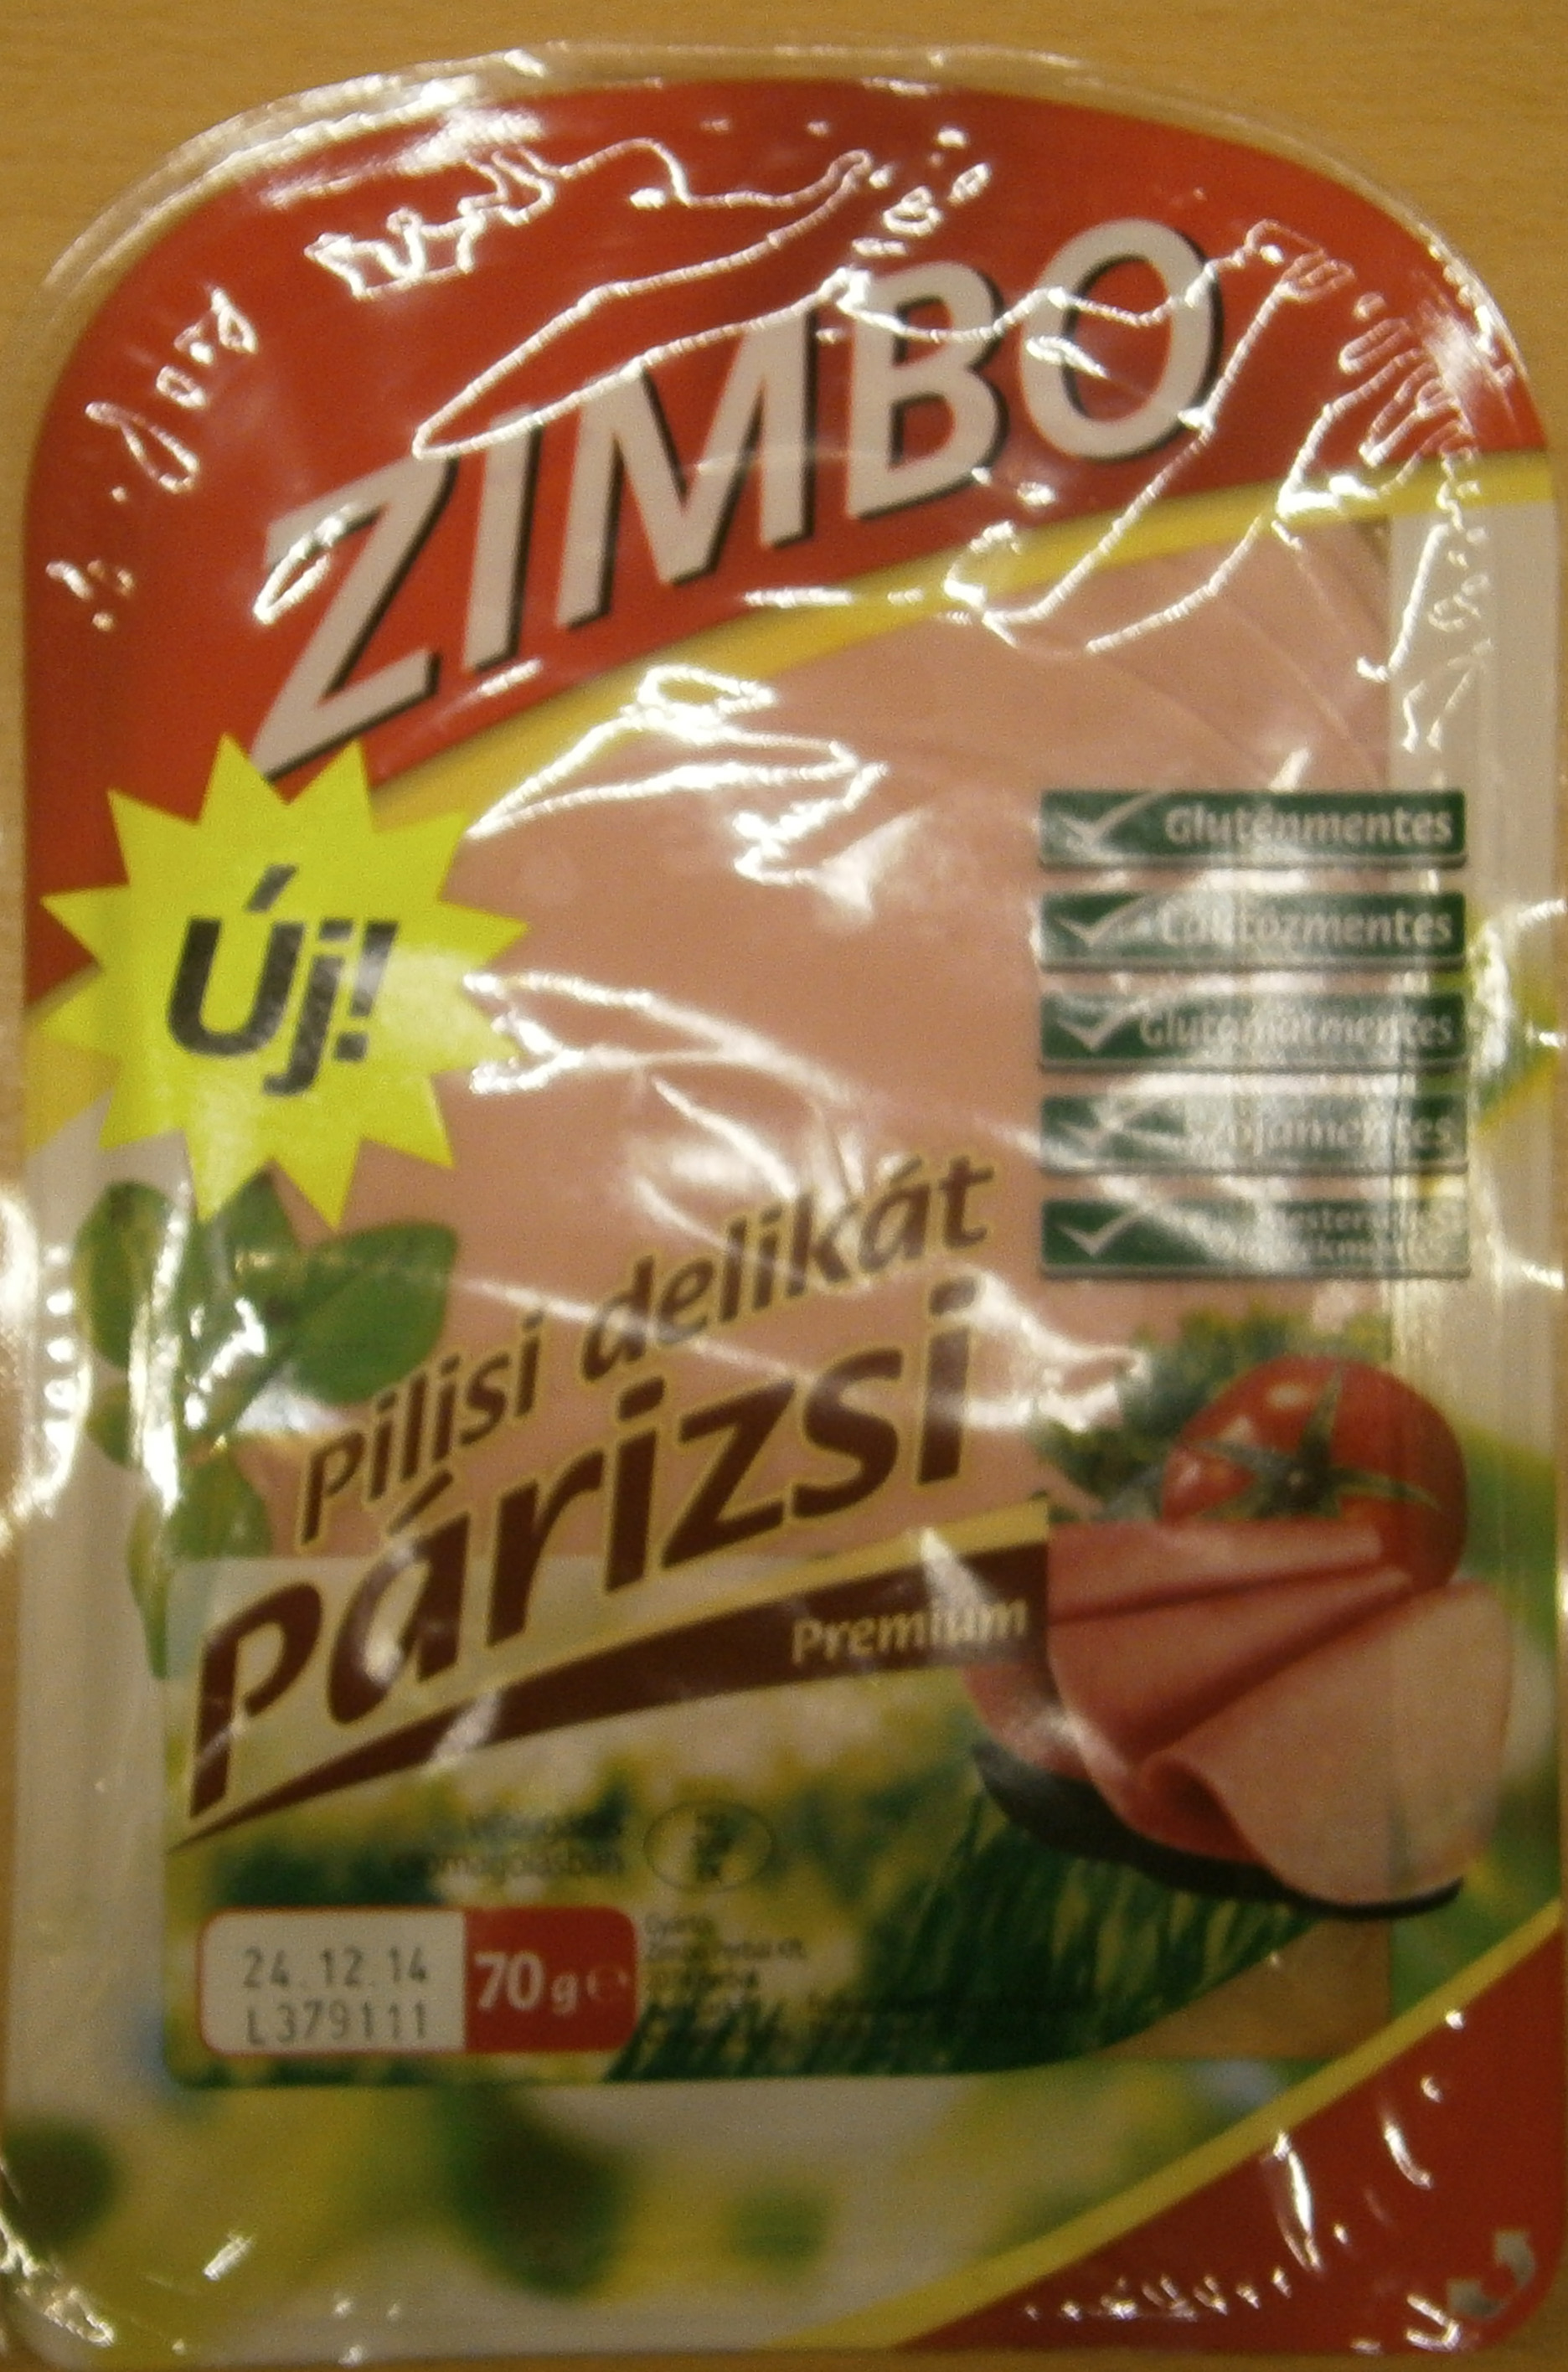 Zimbo Pilisi Delikát